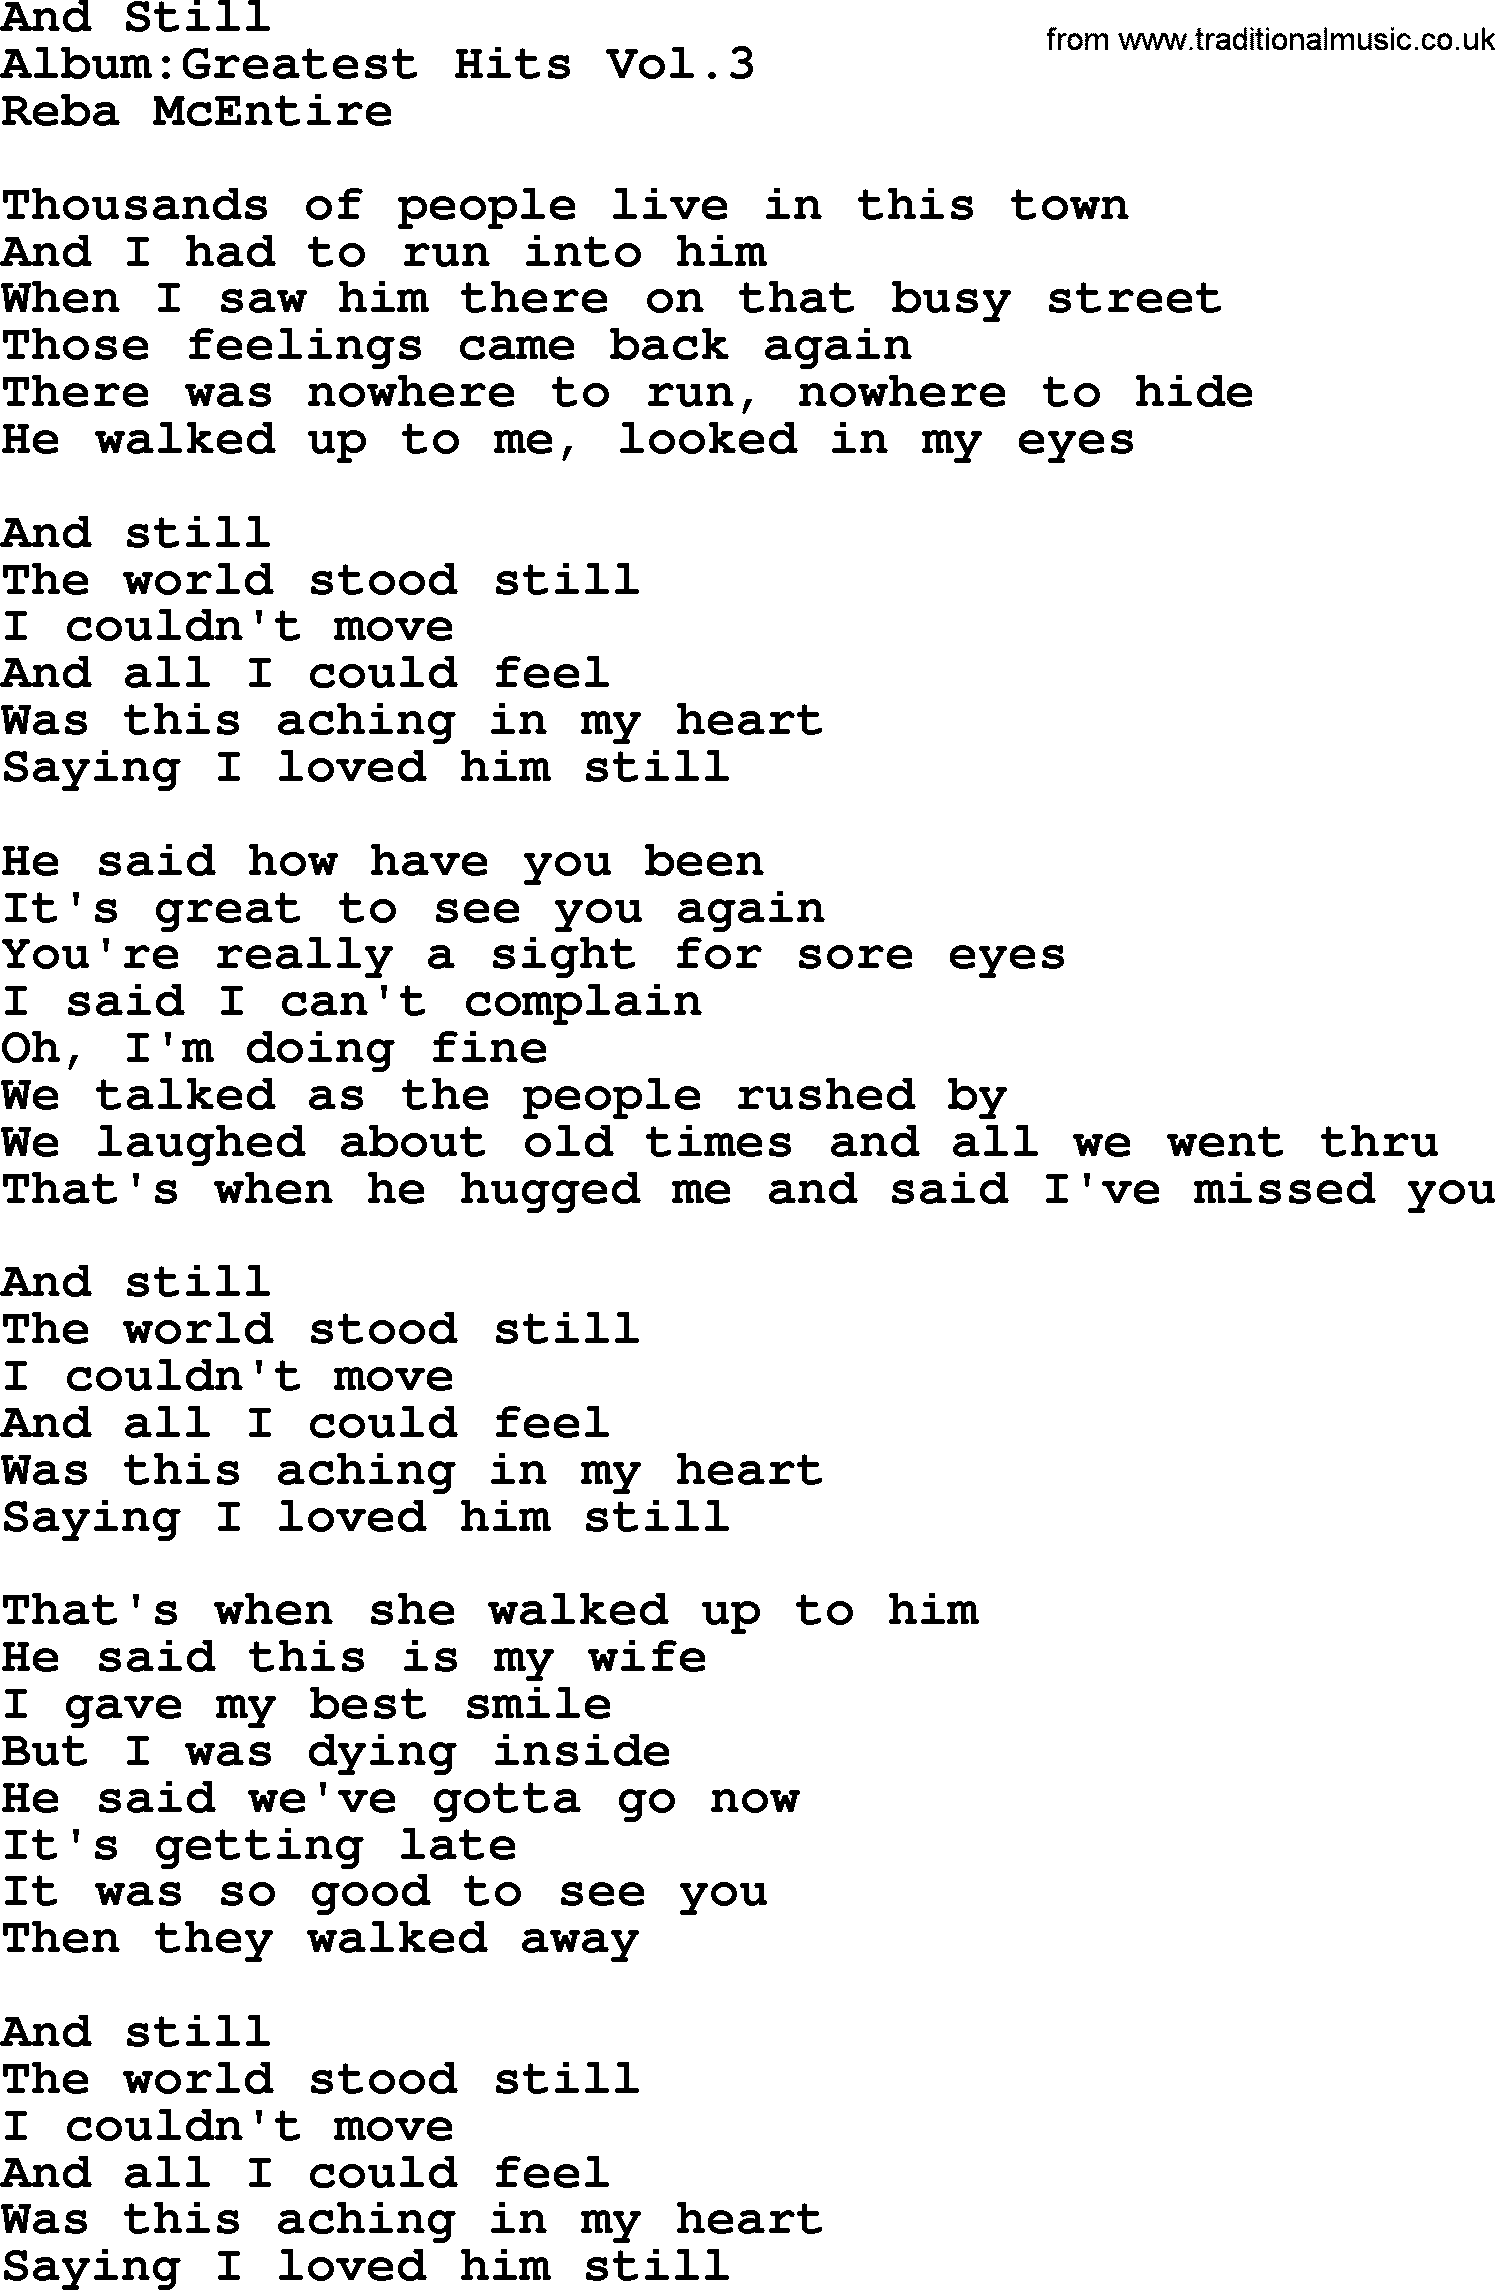 Reba McEntire song: And Still lyrics